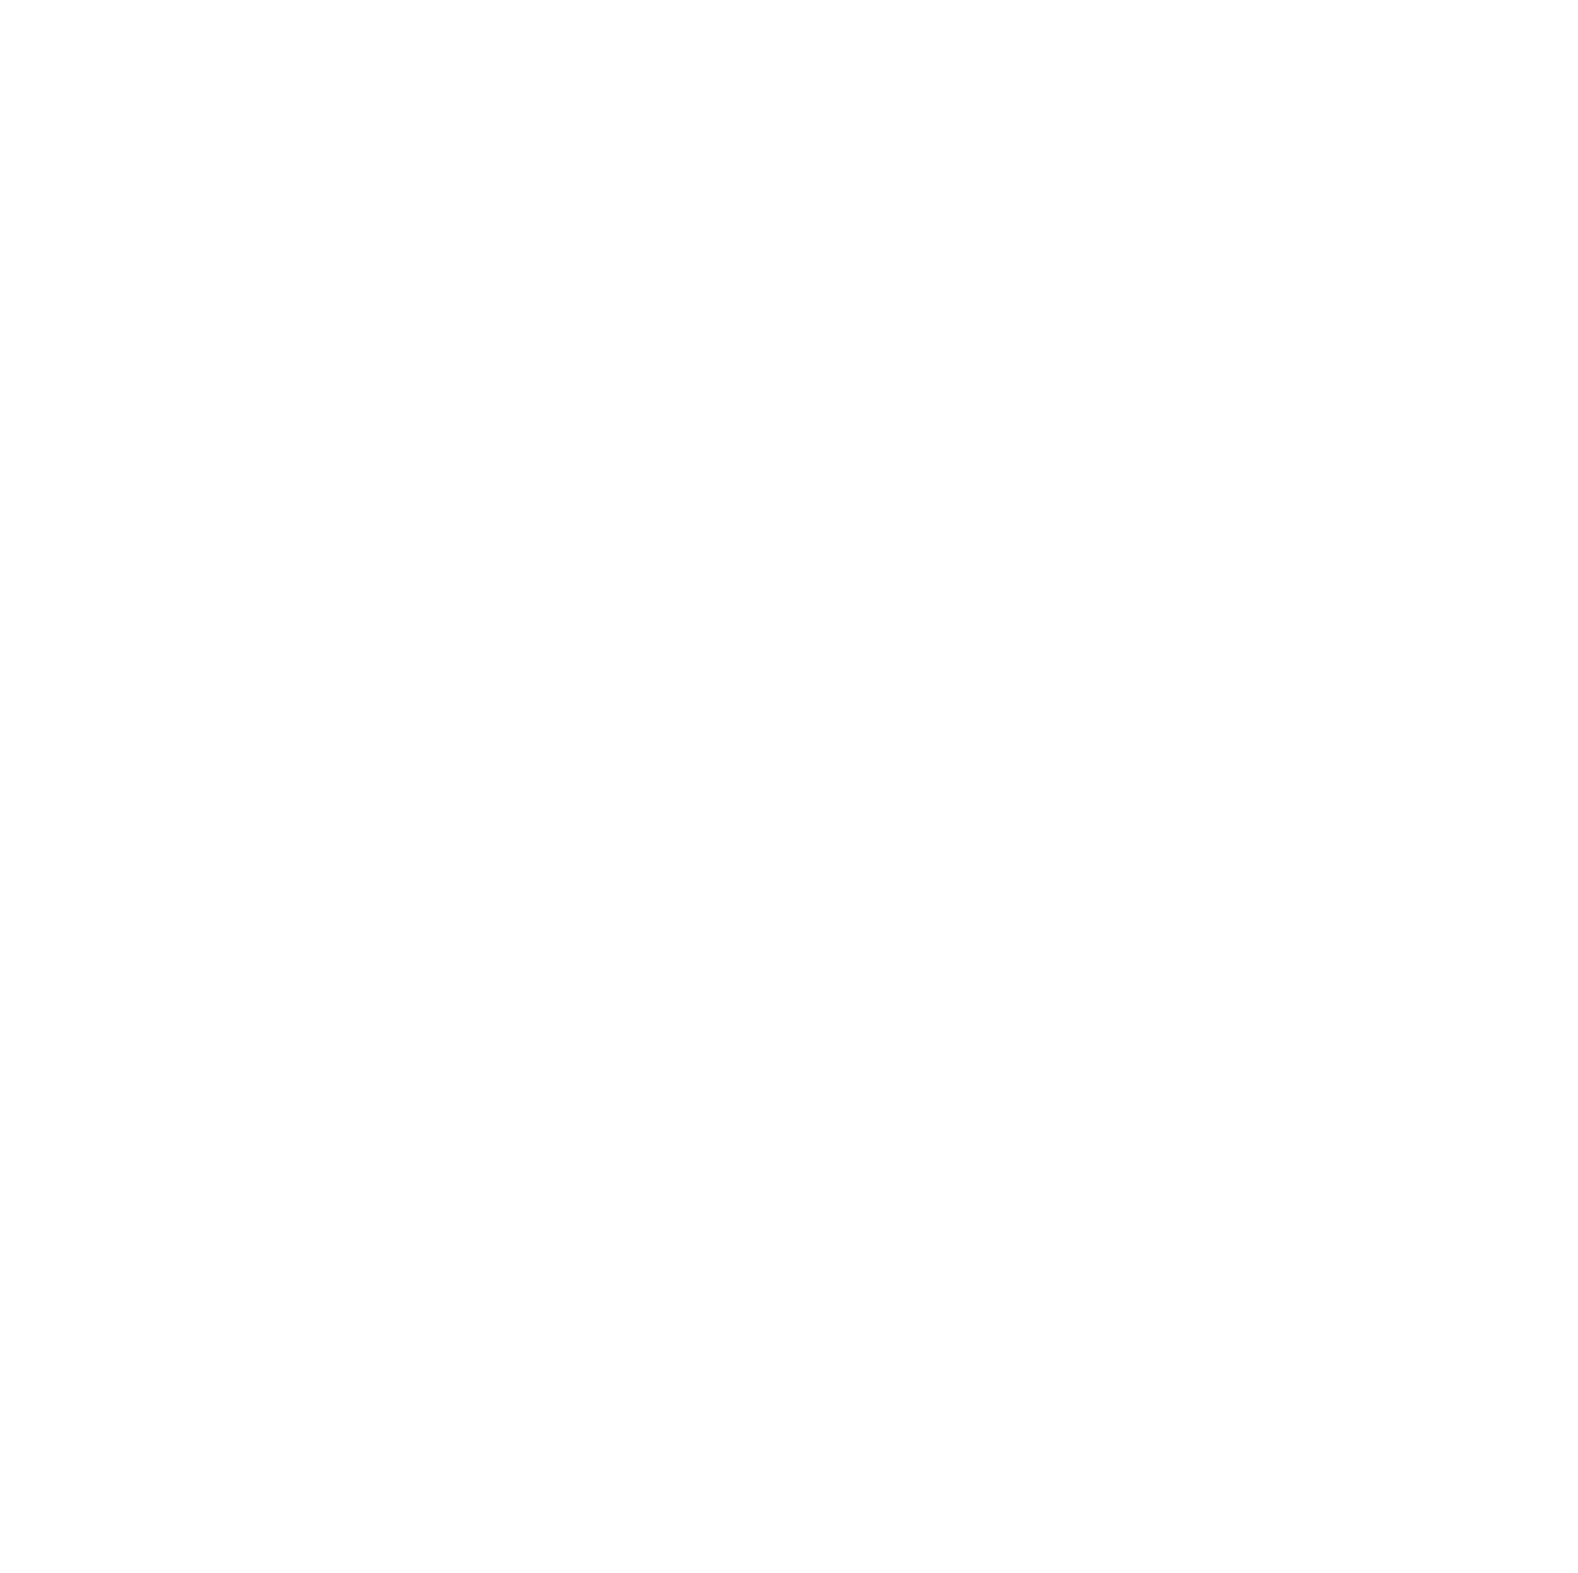 MillerKnoll logo for dark backgrounds (transparent PNG)